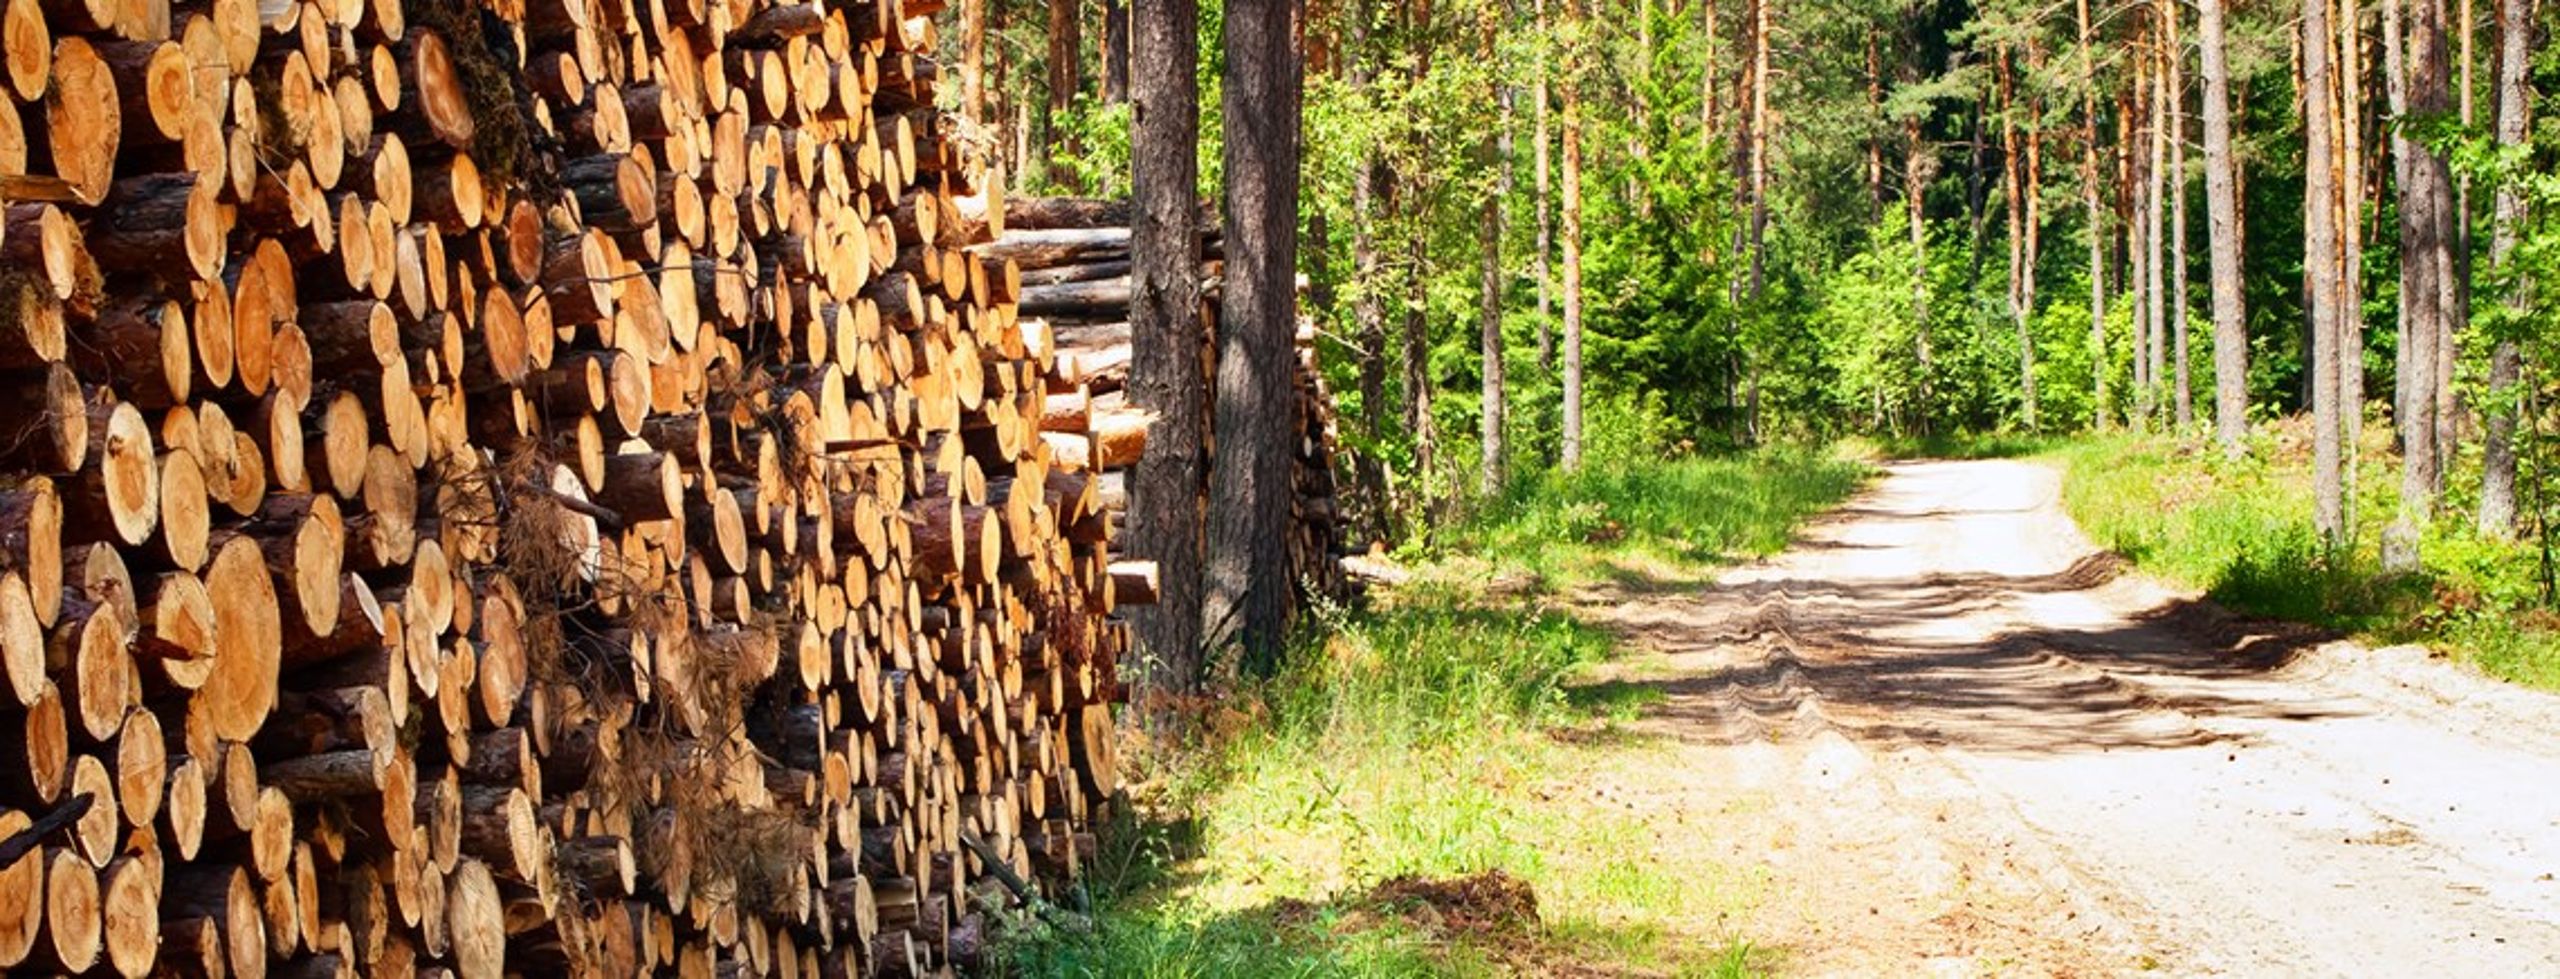 Blå blok står fast på, at man ønsker mindre tømmerproduktion i statens skove. Også selvom beskyttelsen i det åbne land ikke reduceres.